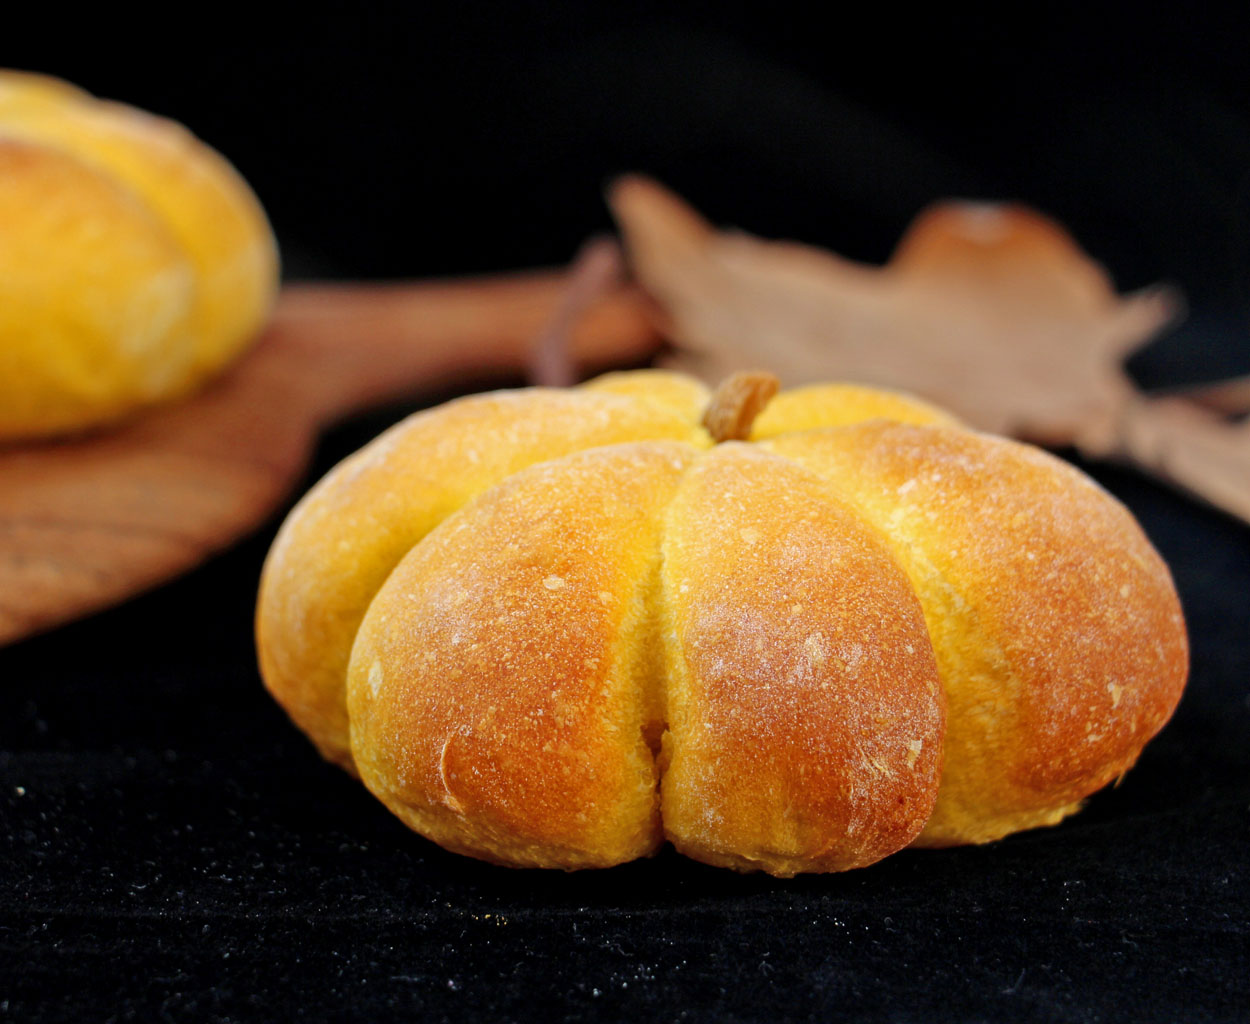 南瓜面包—漂亮又可爱的南瓜造型面包，不爱吃瓜果的孩子也要抢着吃的做法